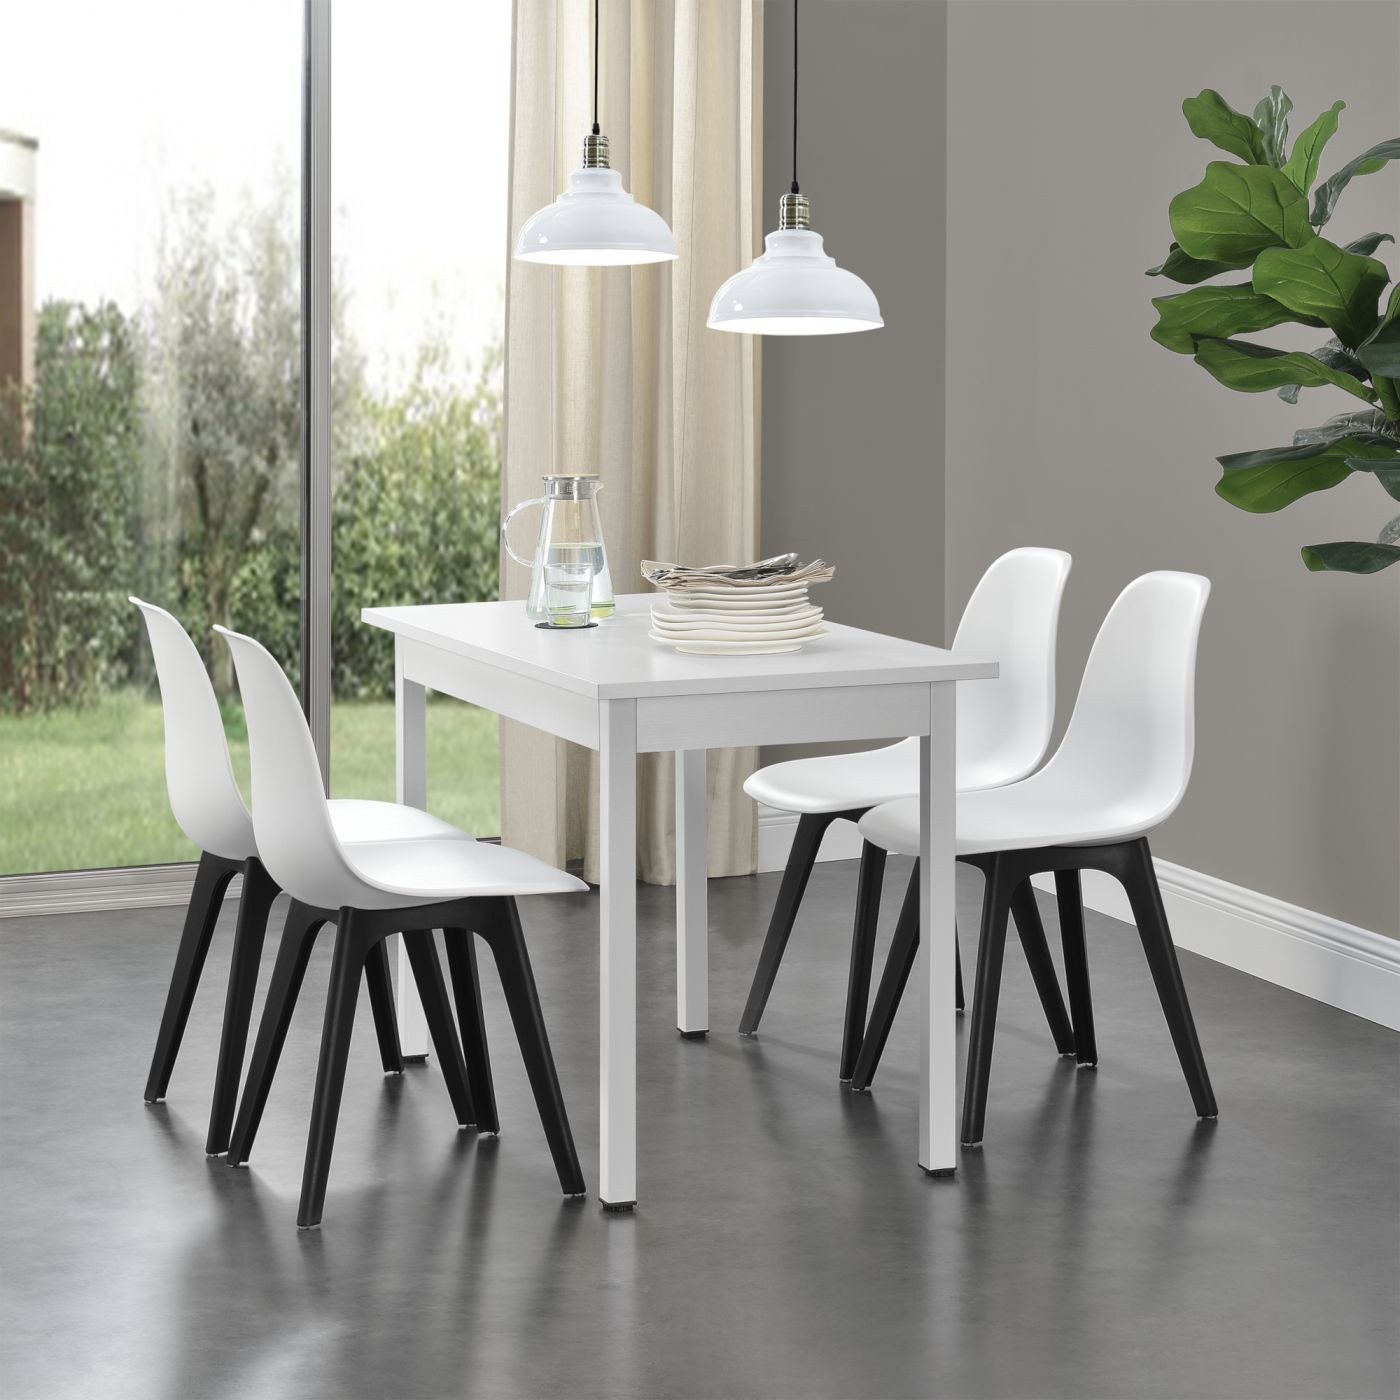 en.casa] Set de 2 Chaises Design Chaise de Cuisine Chaise de Salle à Manger  Plastique Blanc et Noir 83 x 54 x 48 cm